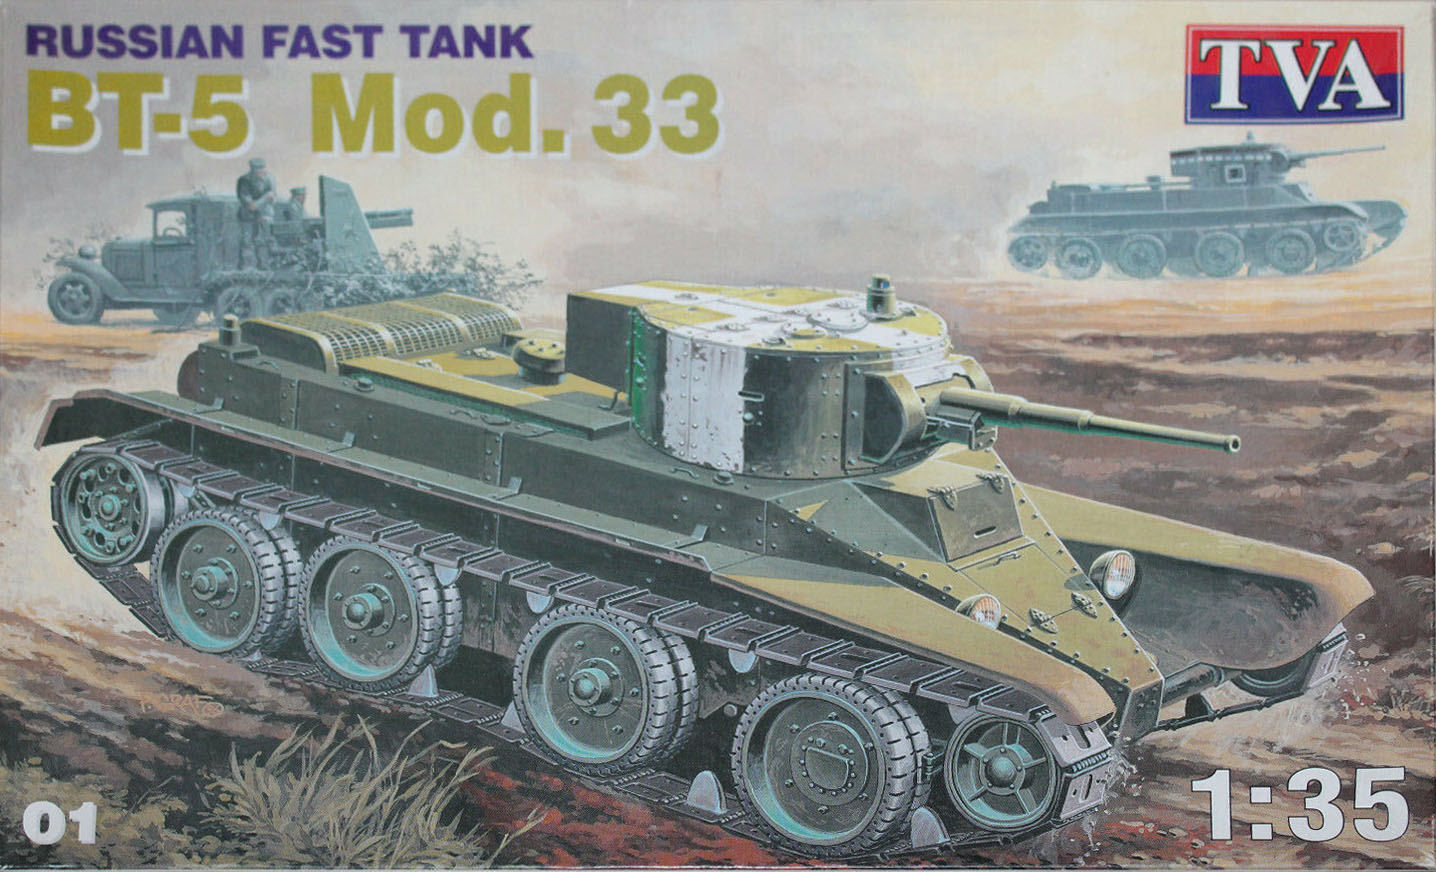 TVA 01 Russian Fast Tank BT-5 Mod. 33